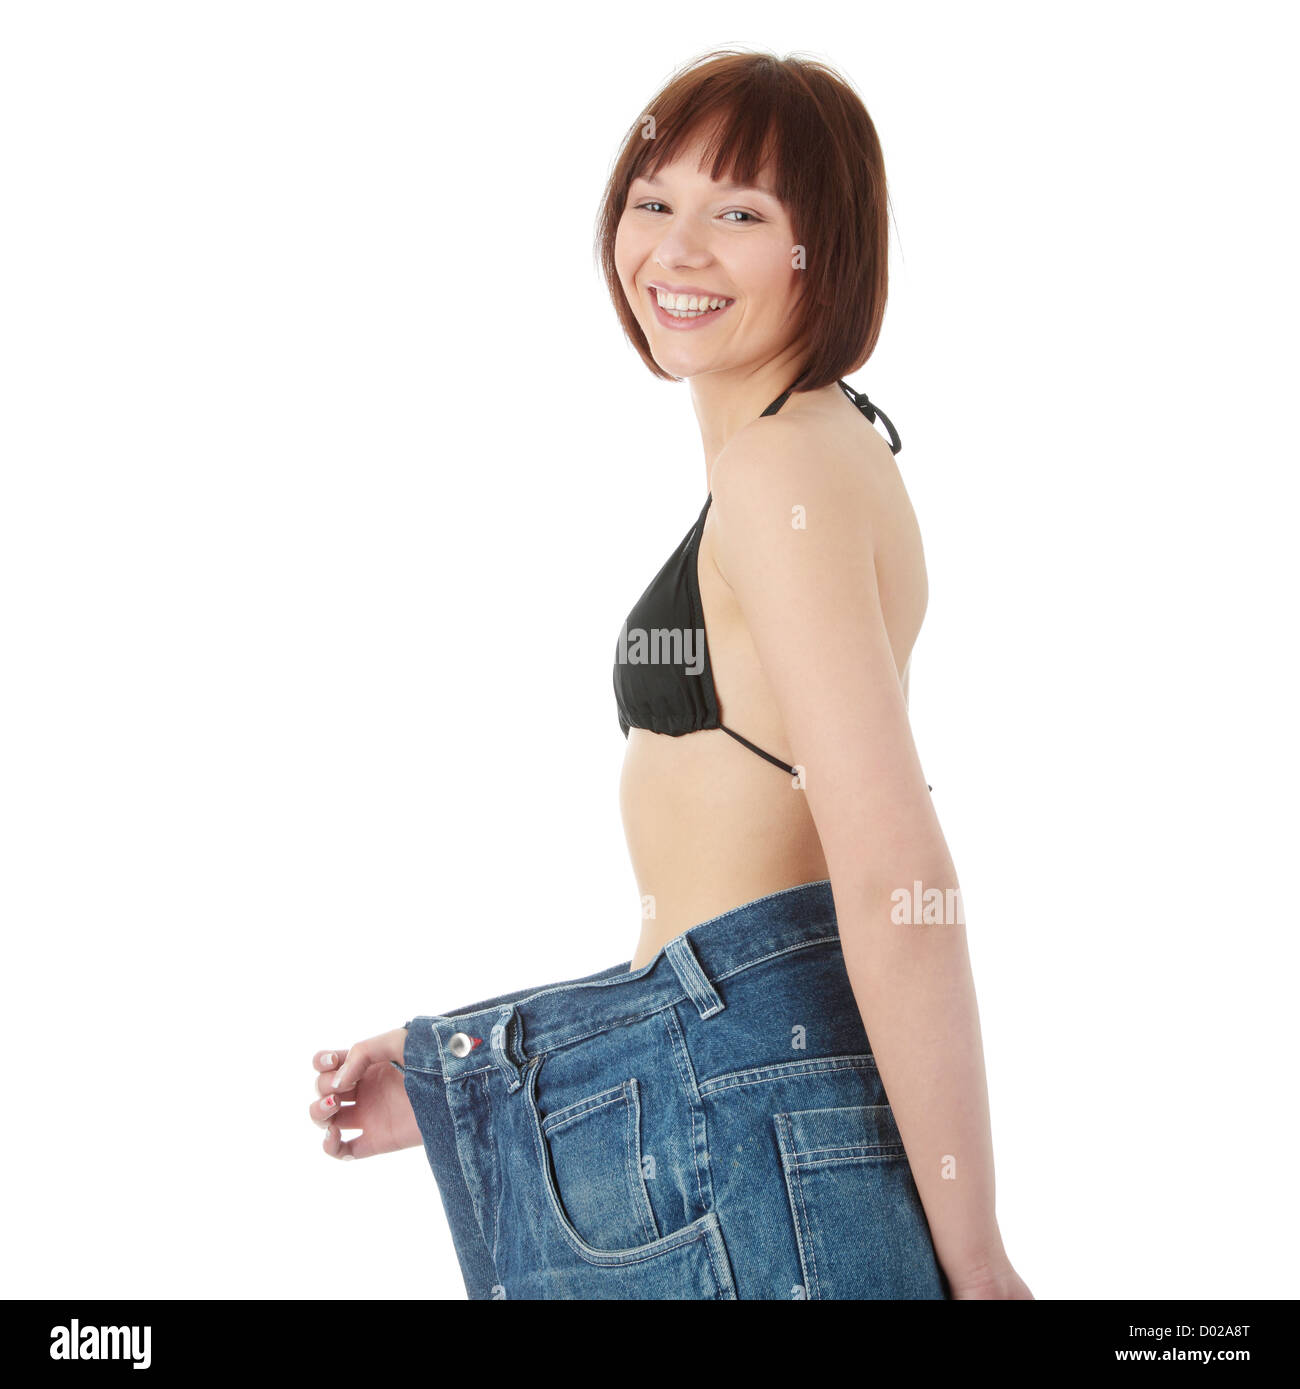 Teen donna che mostra quanto peso ha perso. Isolato su bianco Foto Stock